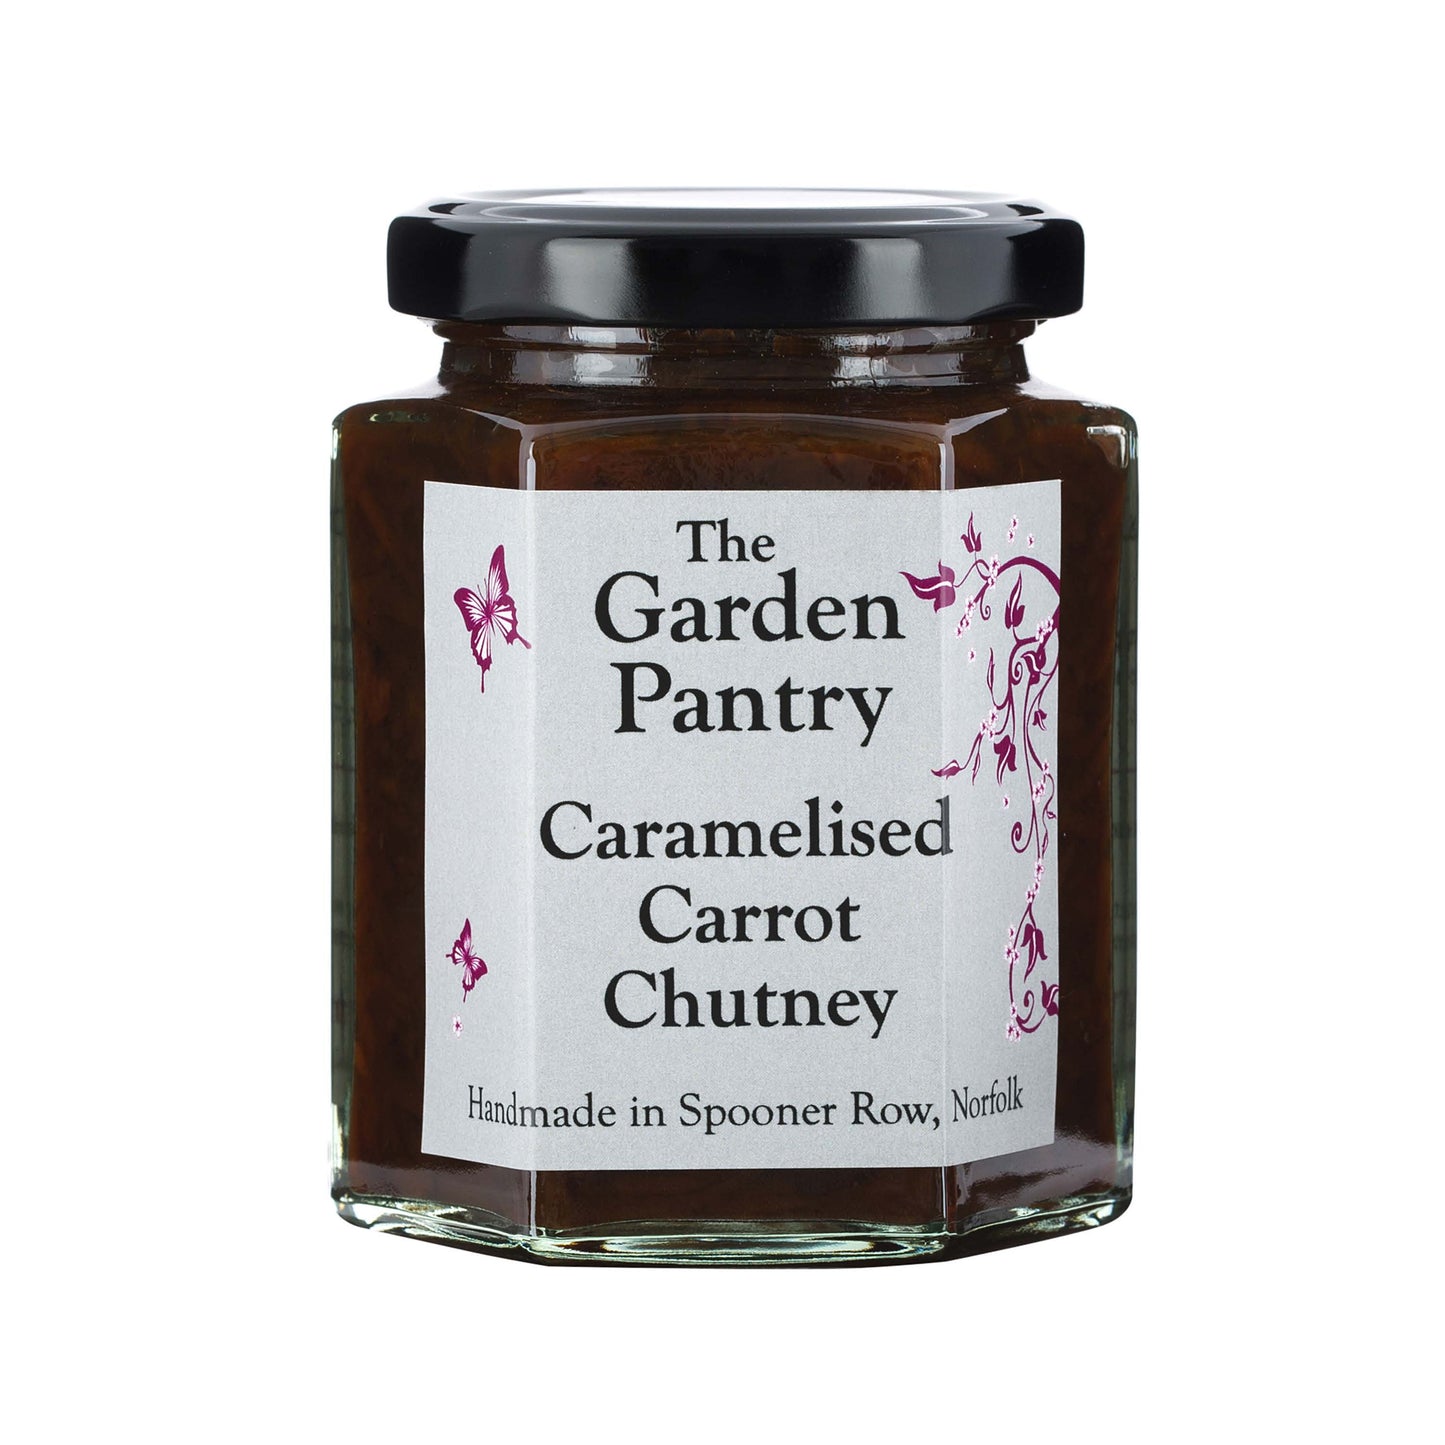 The Garden Pantry Caramelised Carrot Chutney